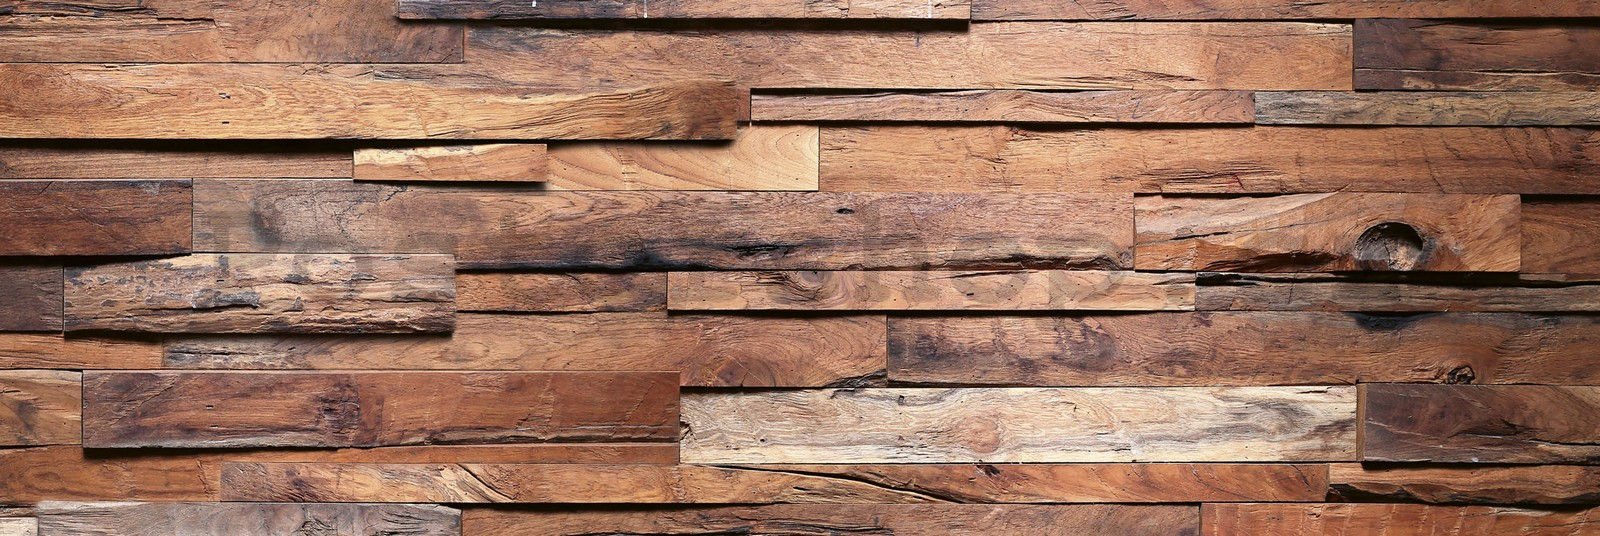 Samolepící omyvatelná tapeta za kuchyňskou linku - Dřevěná zeď, 180x60 cm